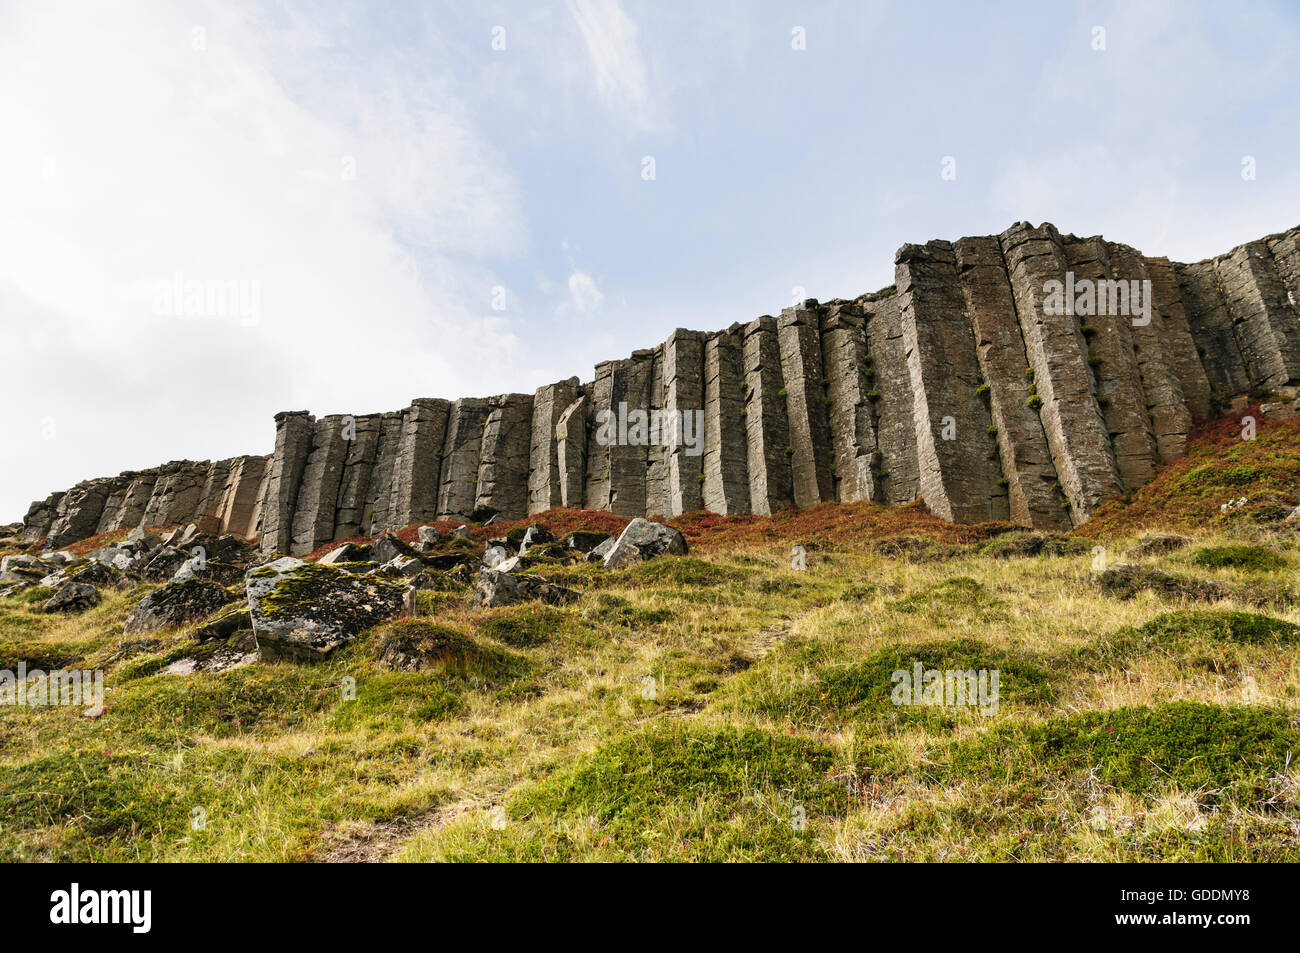 Las columnas de basalto en el valle Hnappadalur Gerduberg en la península de Snaefellsnes, en el oeste de Islandia. Foto de stock